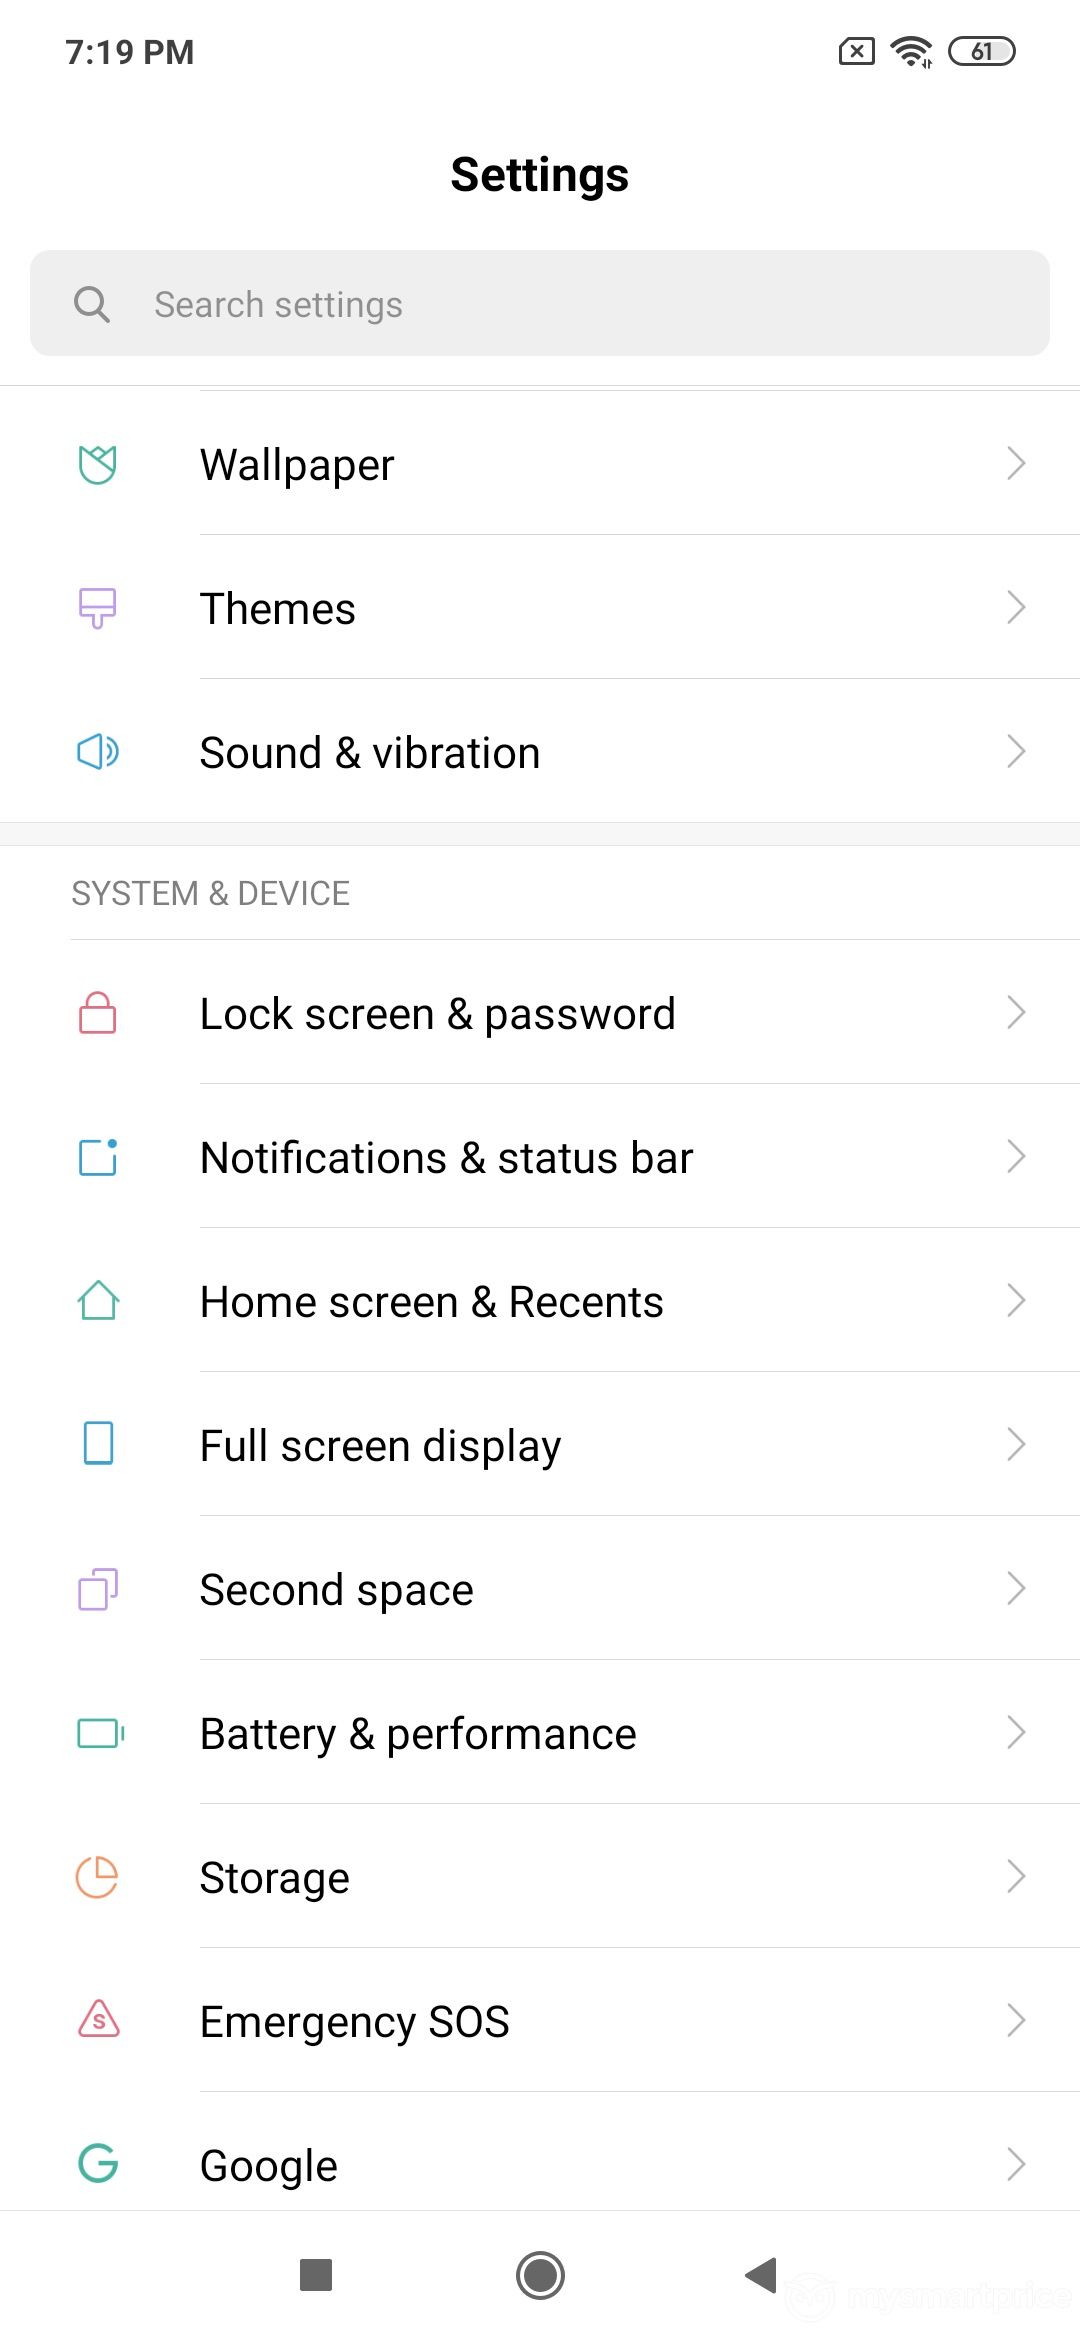 Xiaomi Redmi Note 7 Pro UI Design: Settings (Page 02)